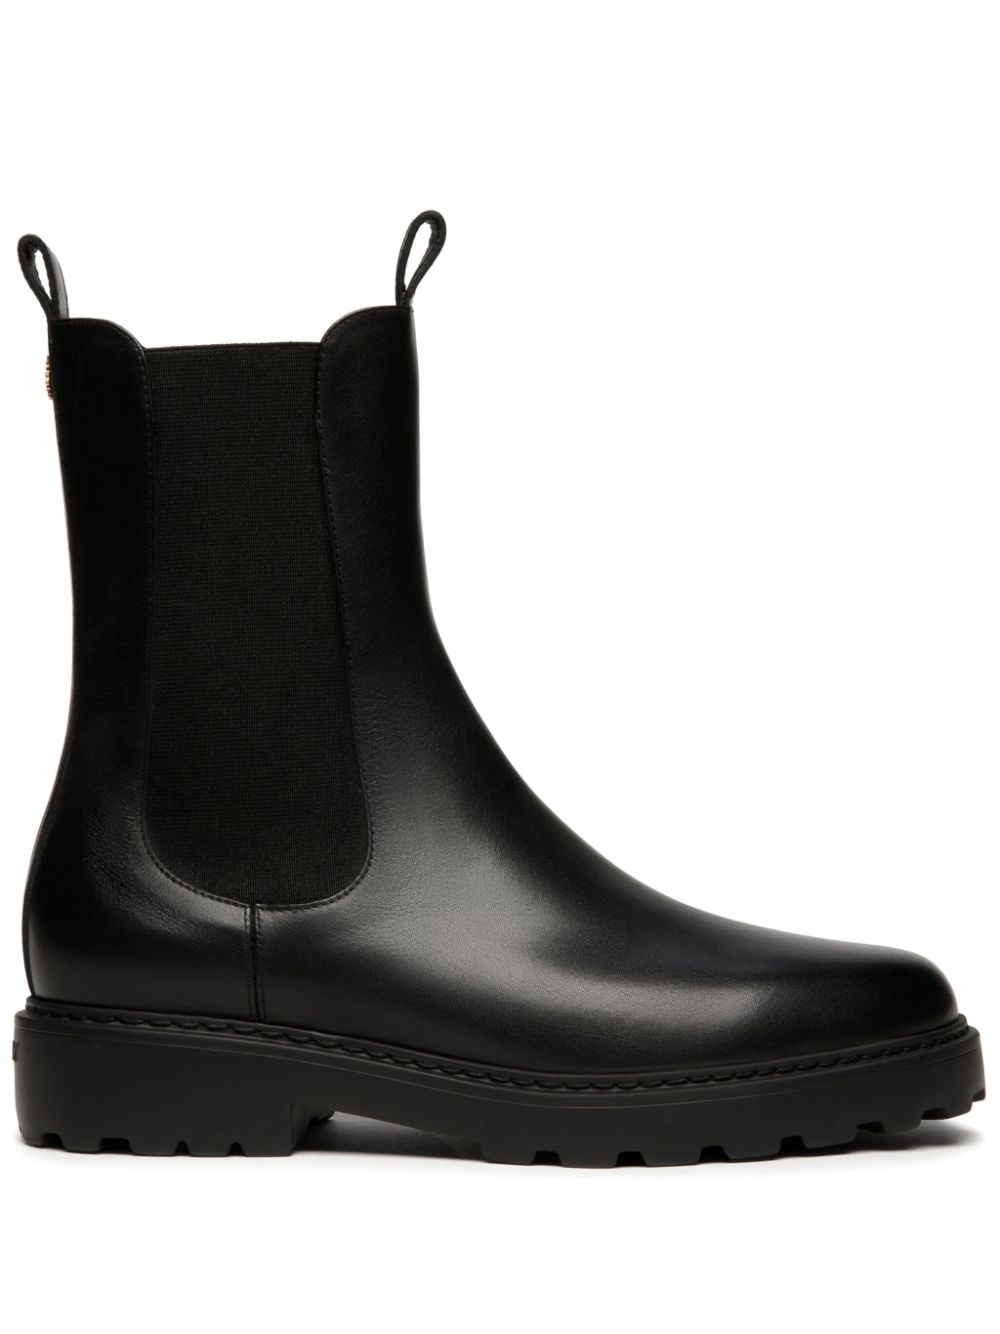 Bally leather boots - Black von Bally